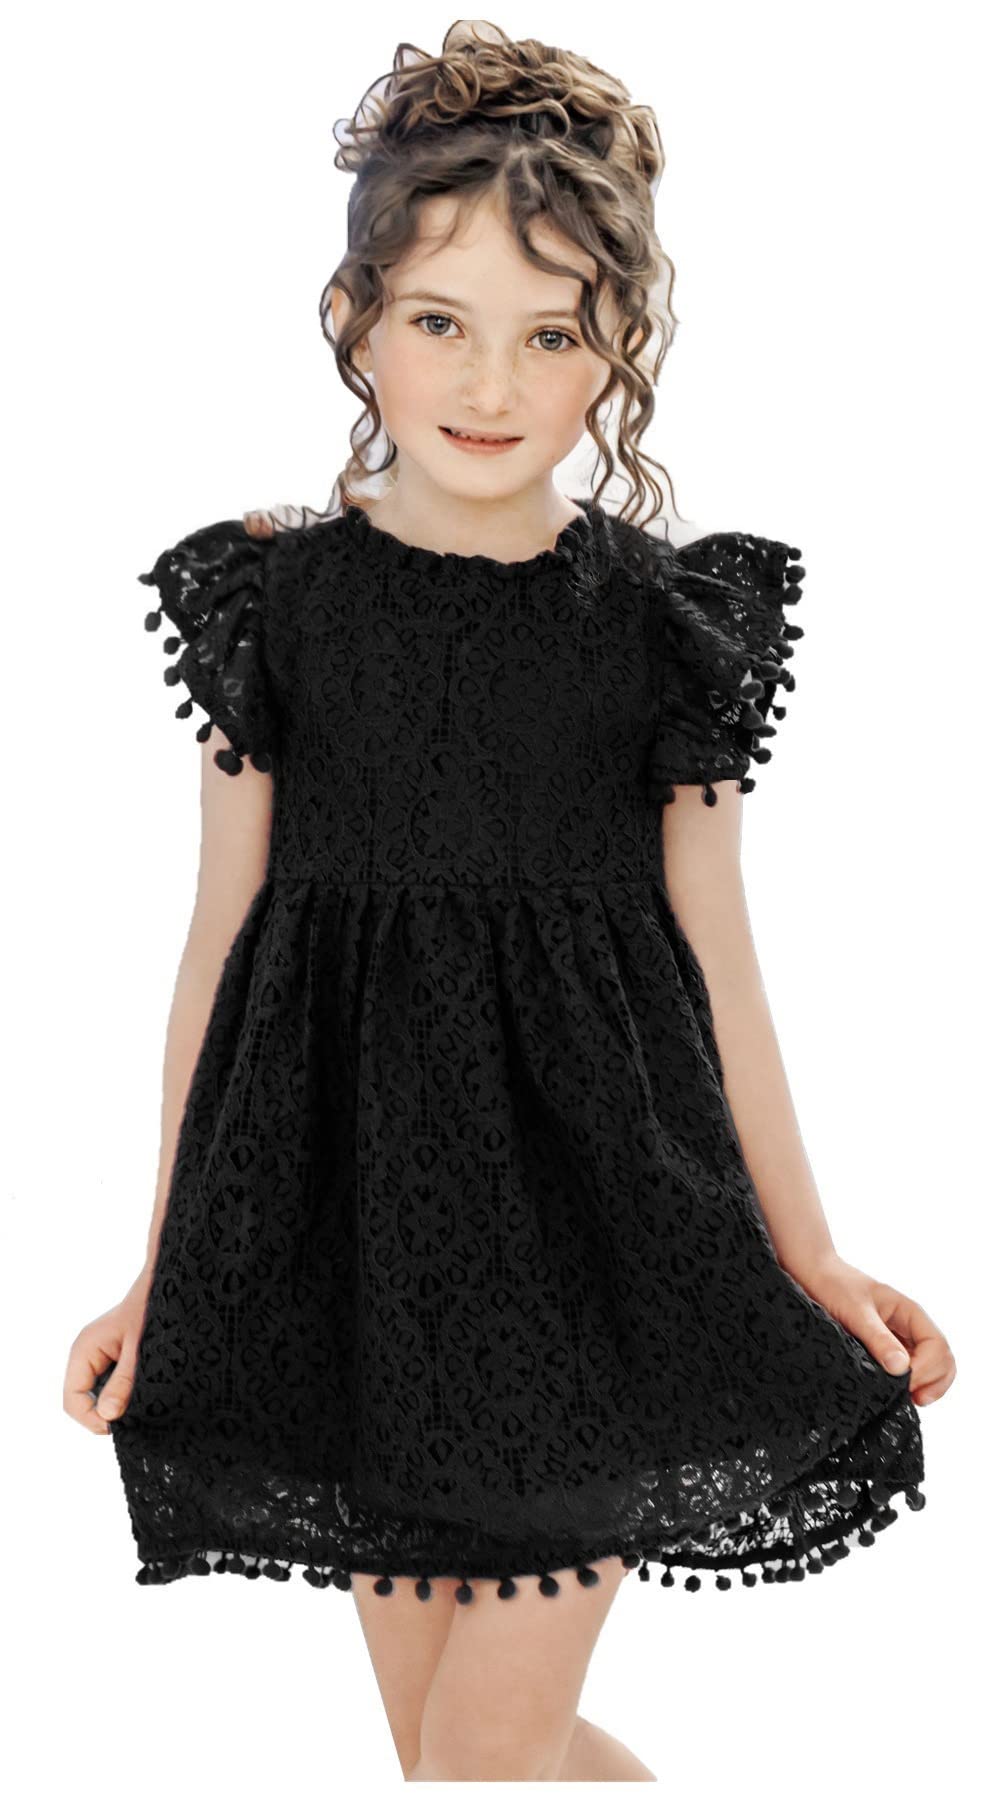 Sunflower Lace Pom Pom Trim Girl Dress in Black - 2BUNNIES